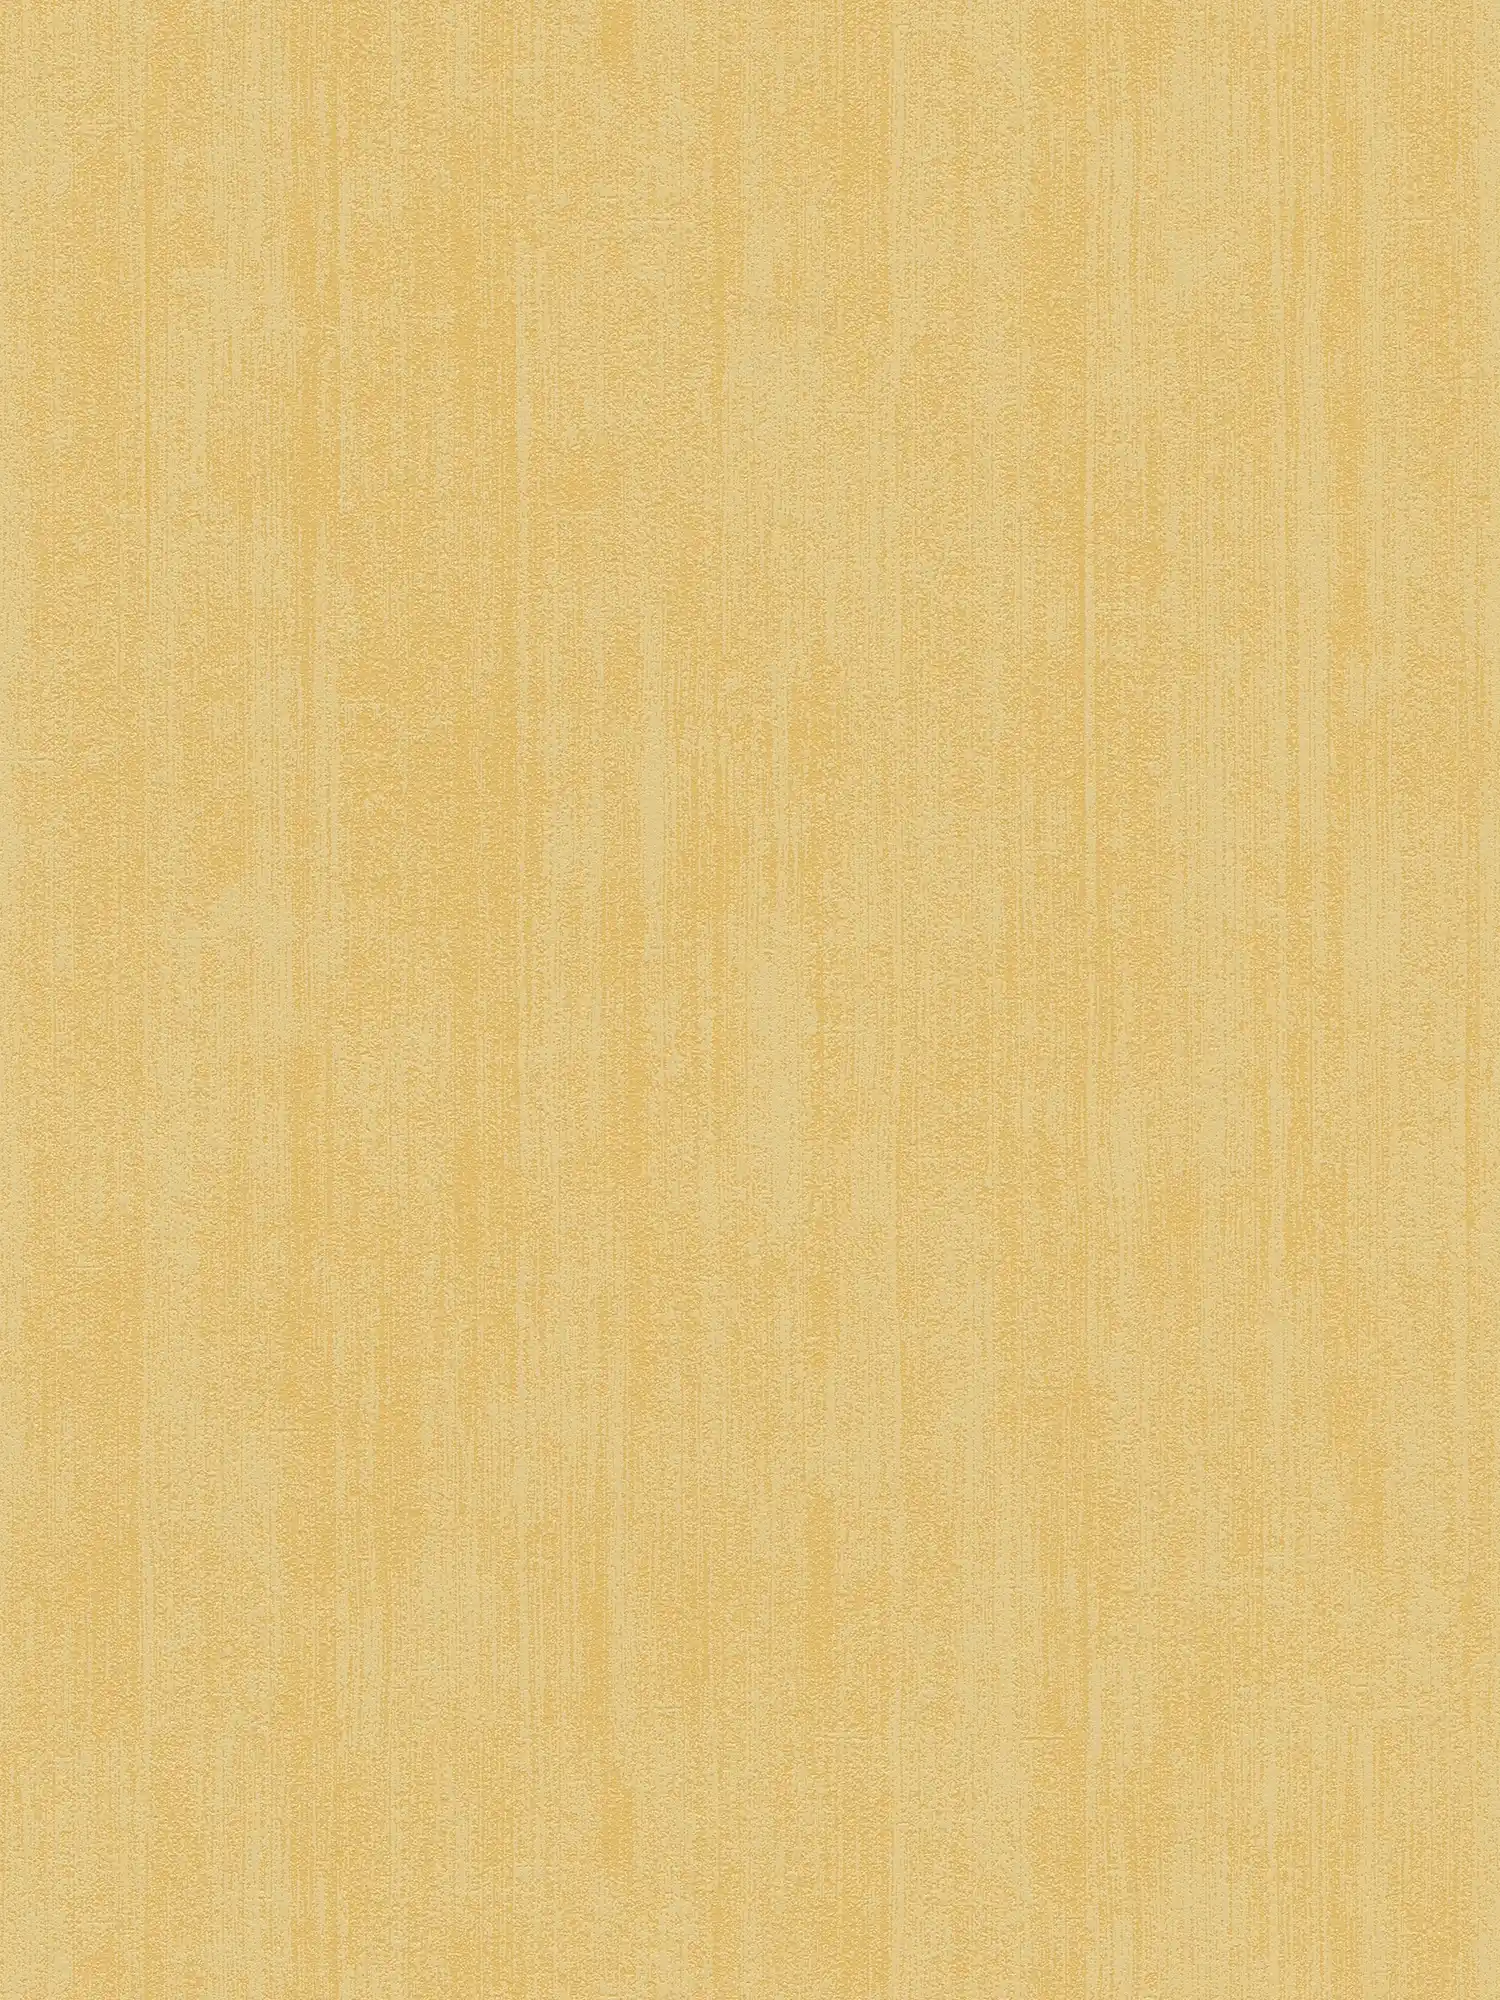 Schuimtextuurbehang in gevlekte textuur - Geel
